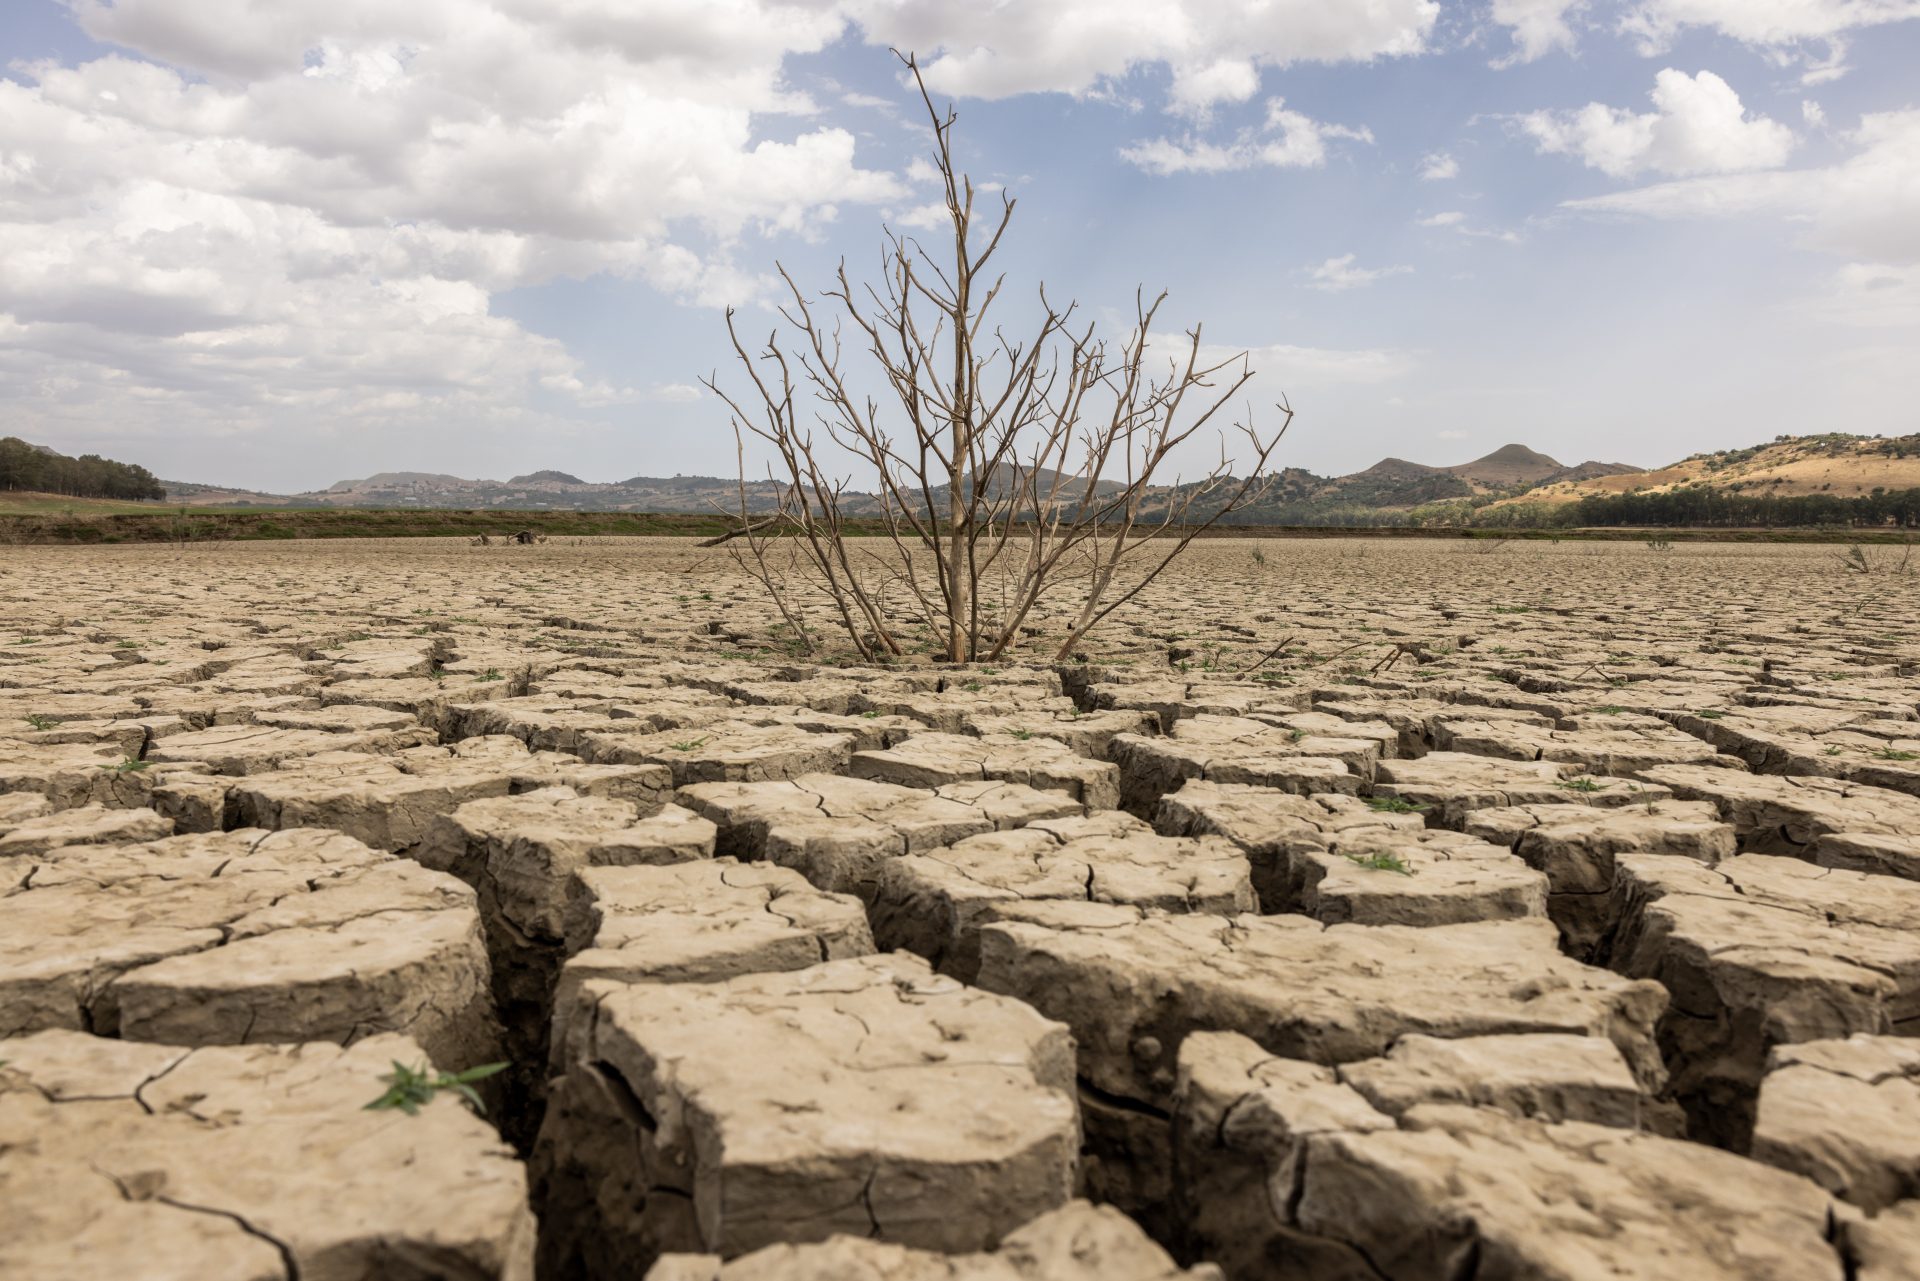 Deserti d’Italia: nasce una guida turistica sui luoghi colpiti dalla siccità